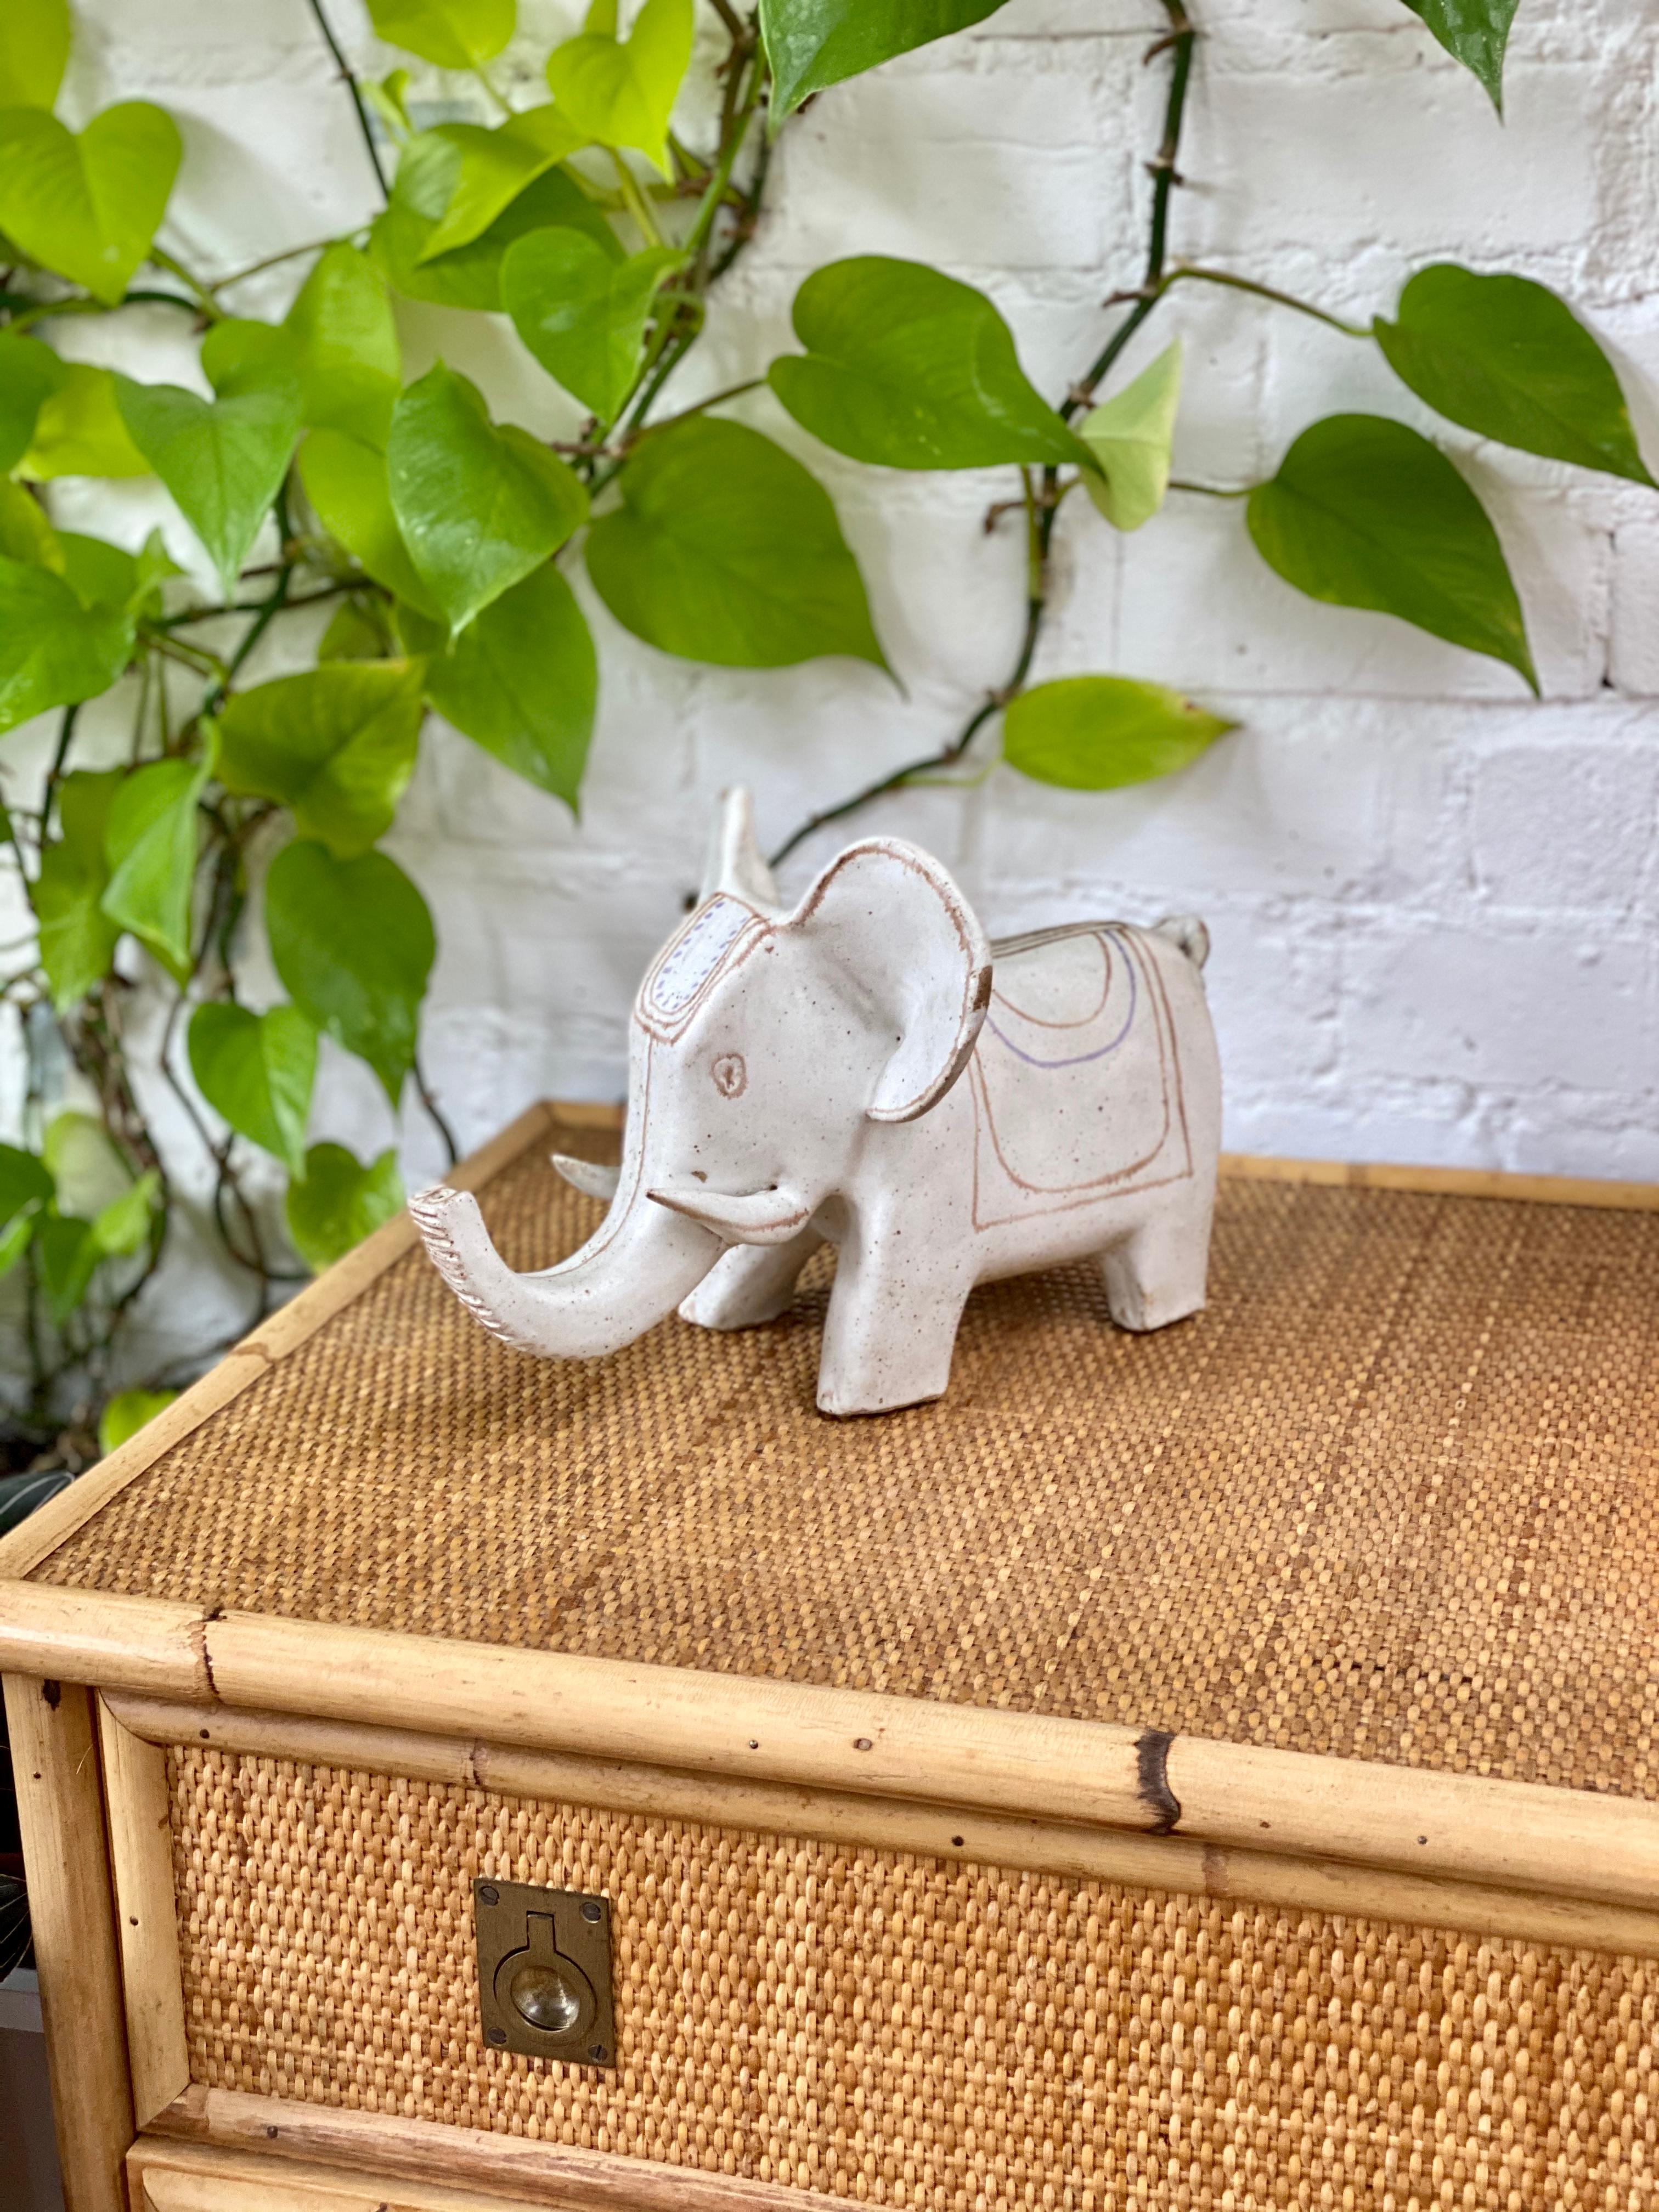 Éléphant blanc en céramique à motif indien par Bruno Gambone (vers 1970). Il s'agit d'un éléphant blanc en céramique absolument charmant avec une couverture et une coiffe de style indien, de grandes oreilles fantaisistes et des défenses dans le